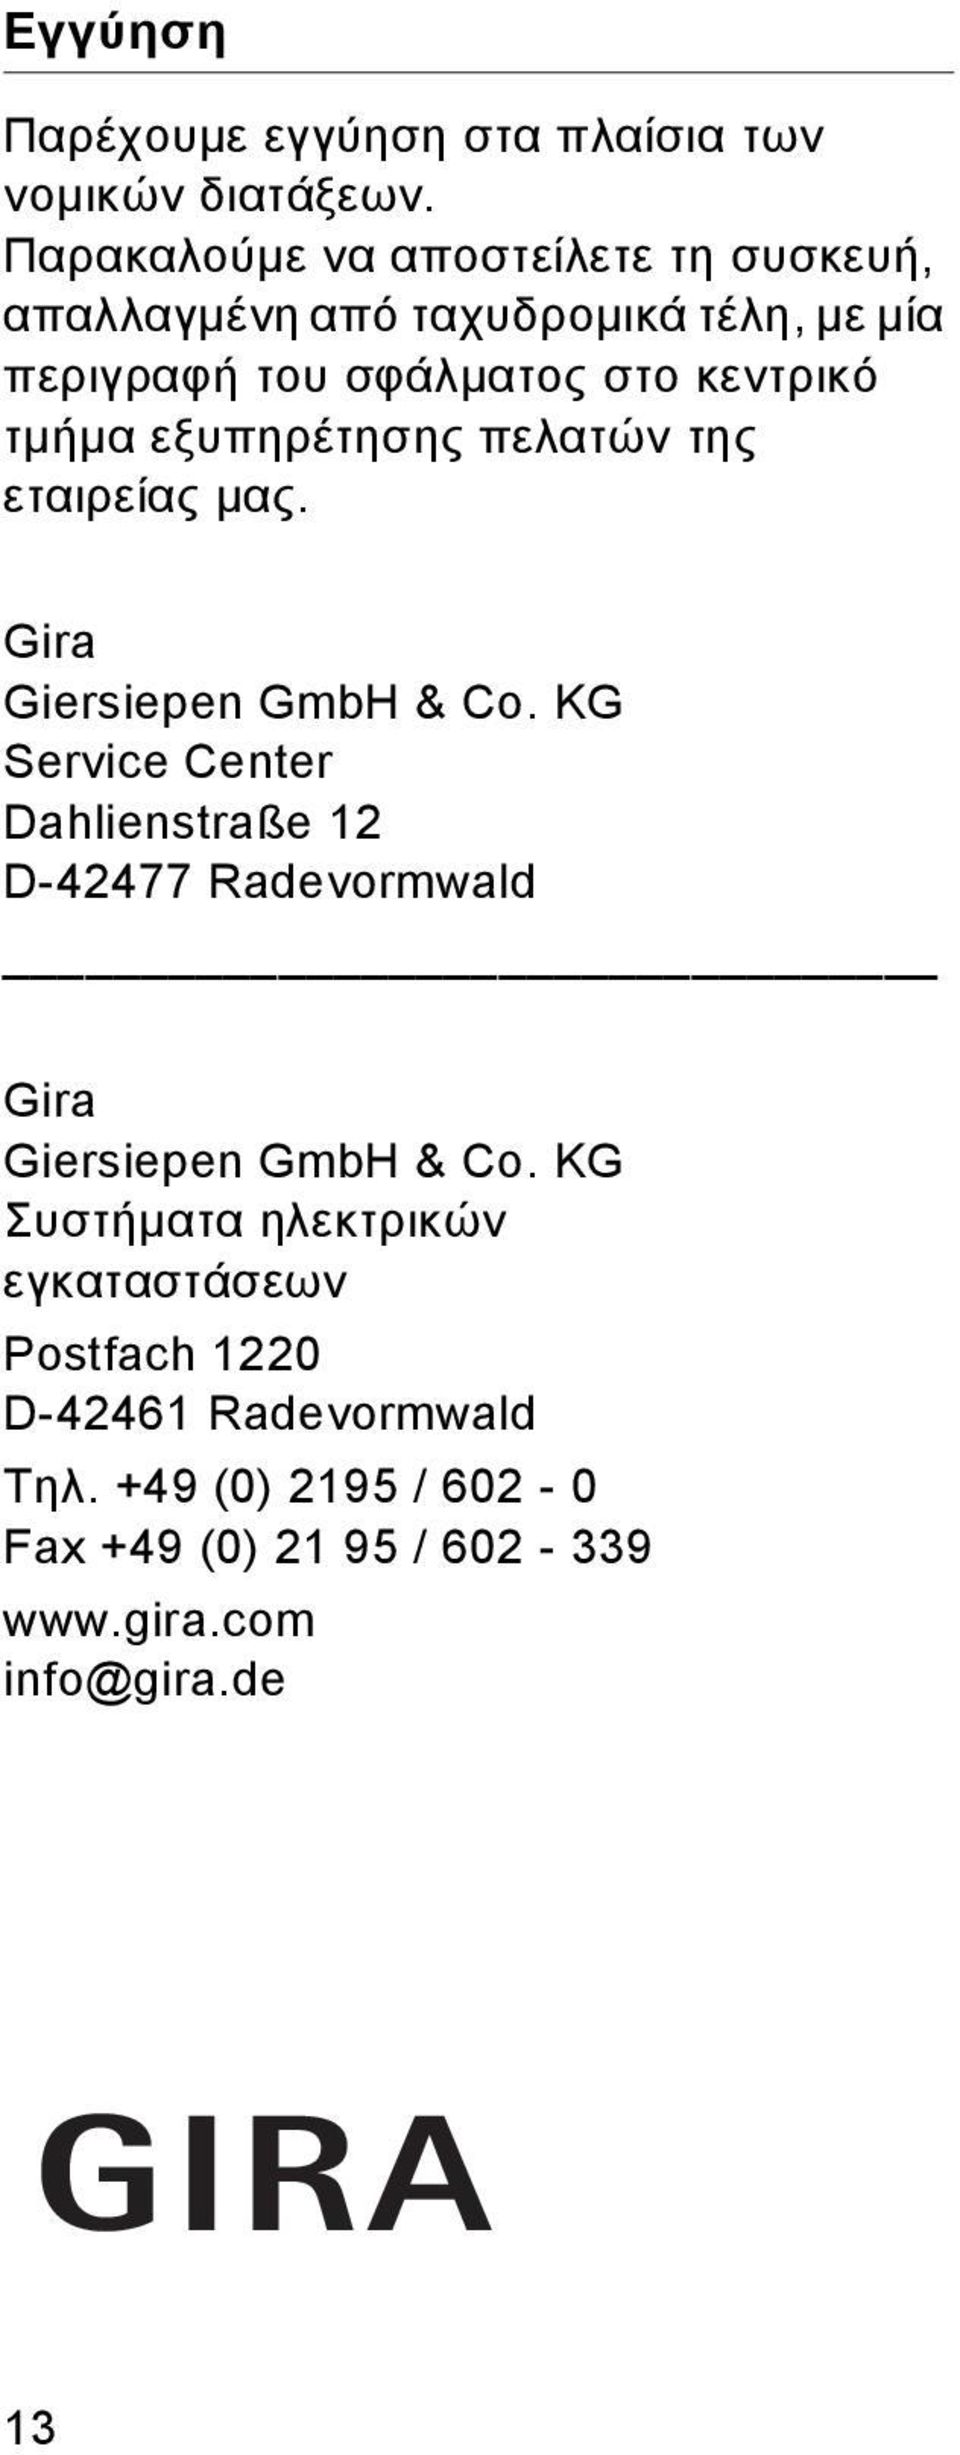 τμήμα εξυπηρέτησης πελατών της εταιρείας μας. Gra Gersepen GmbH & Co.